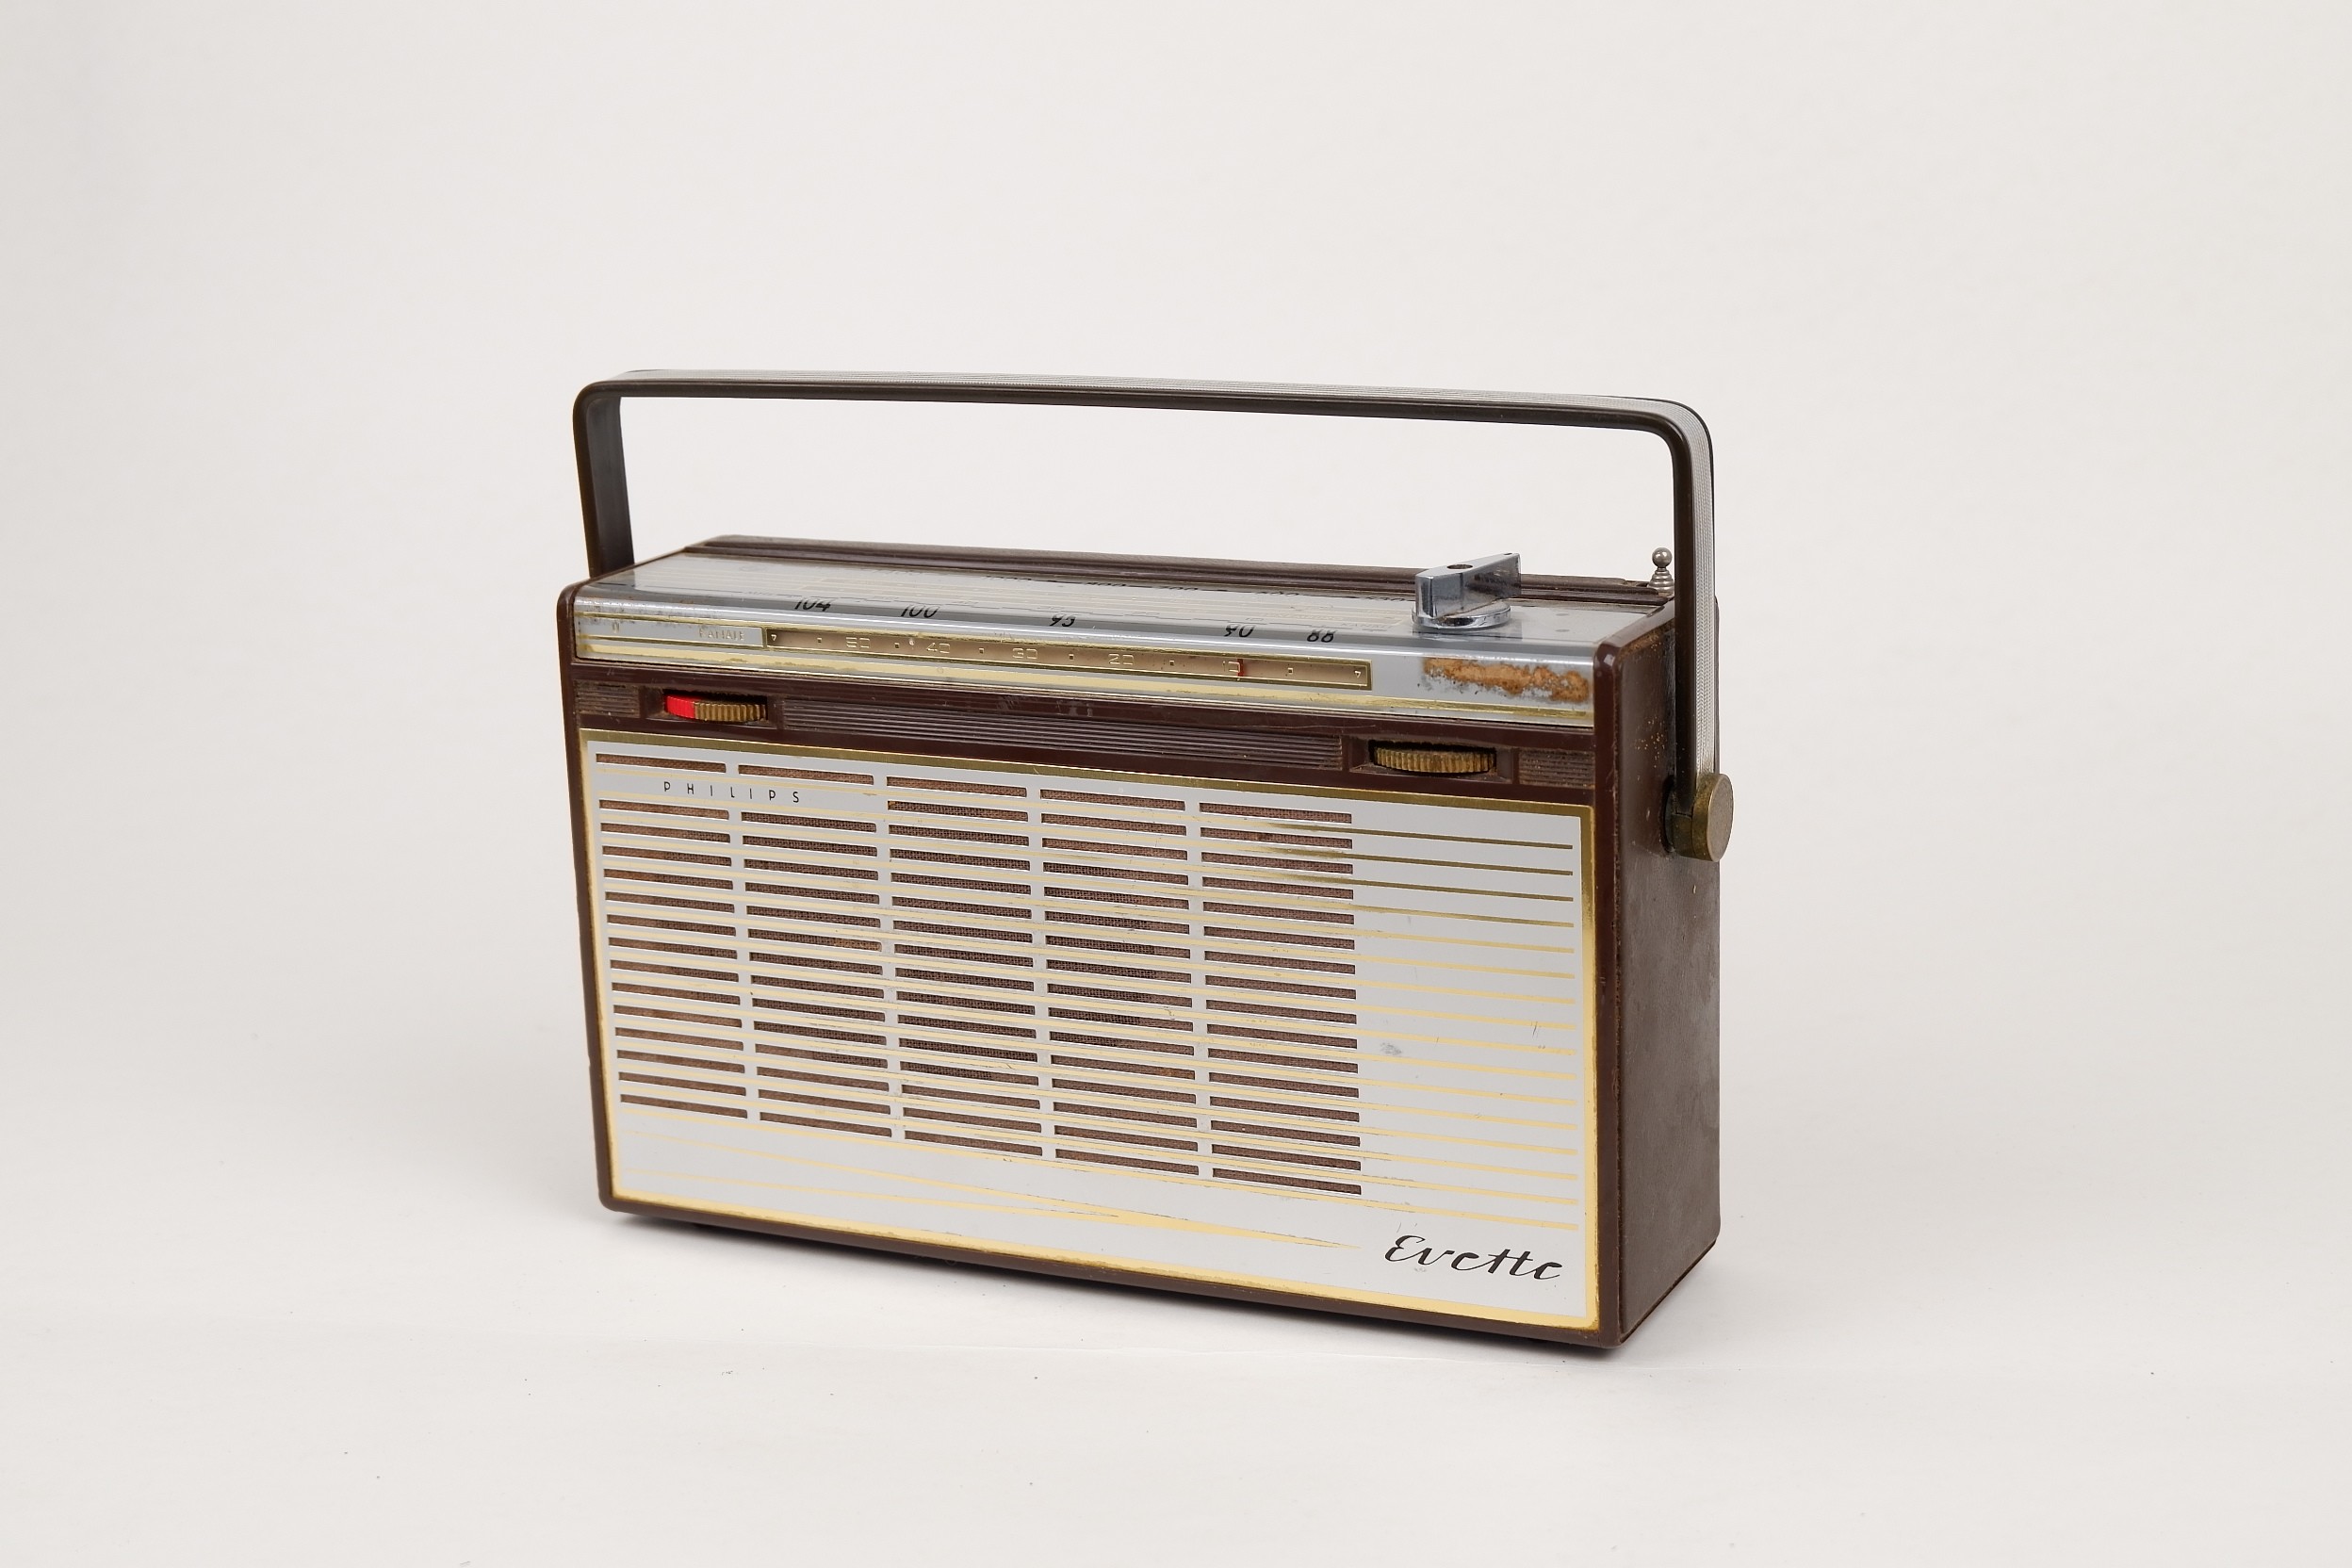 Kofferradio	Philips	" Evette  L3D51T" (Volkskunde- und Freilichtmuseum Roscheider Hof CC0)